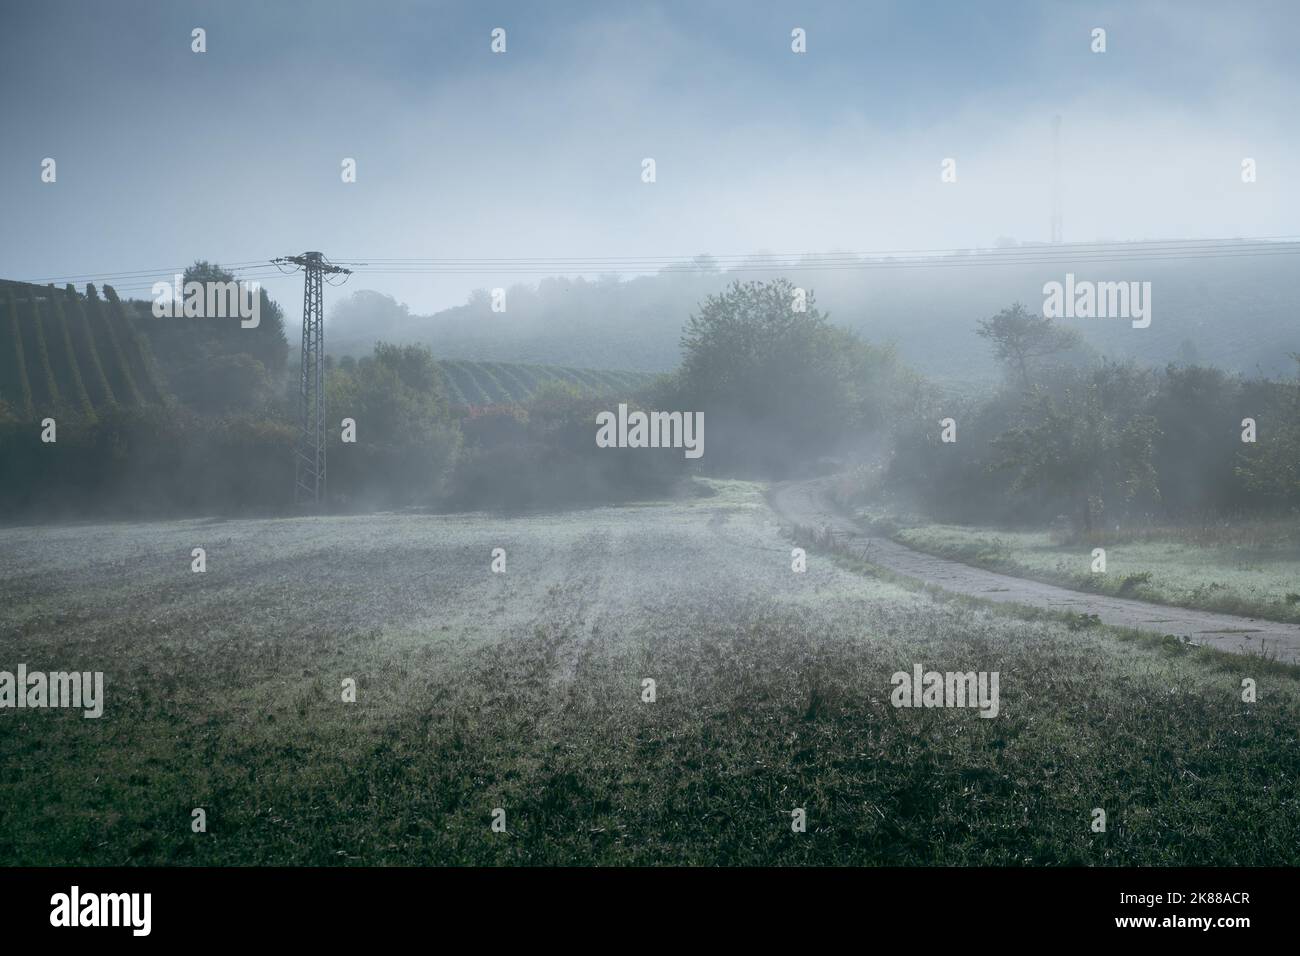 Le brouillard mystique du matin se trouve sur un champ et une route de terre menant dans les collines boisées dans la brume. Banque D'Images